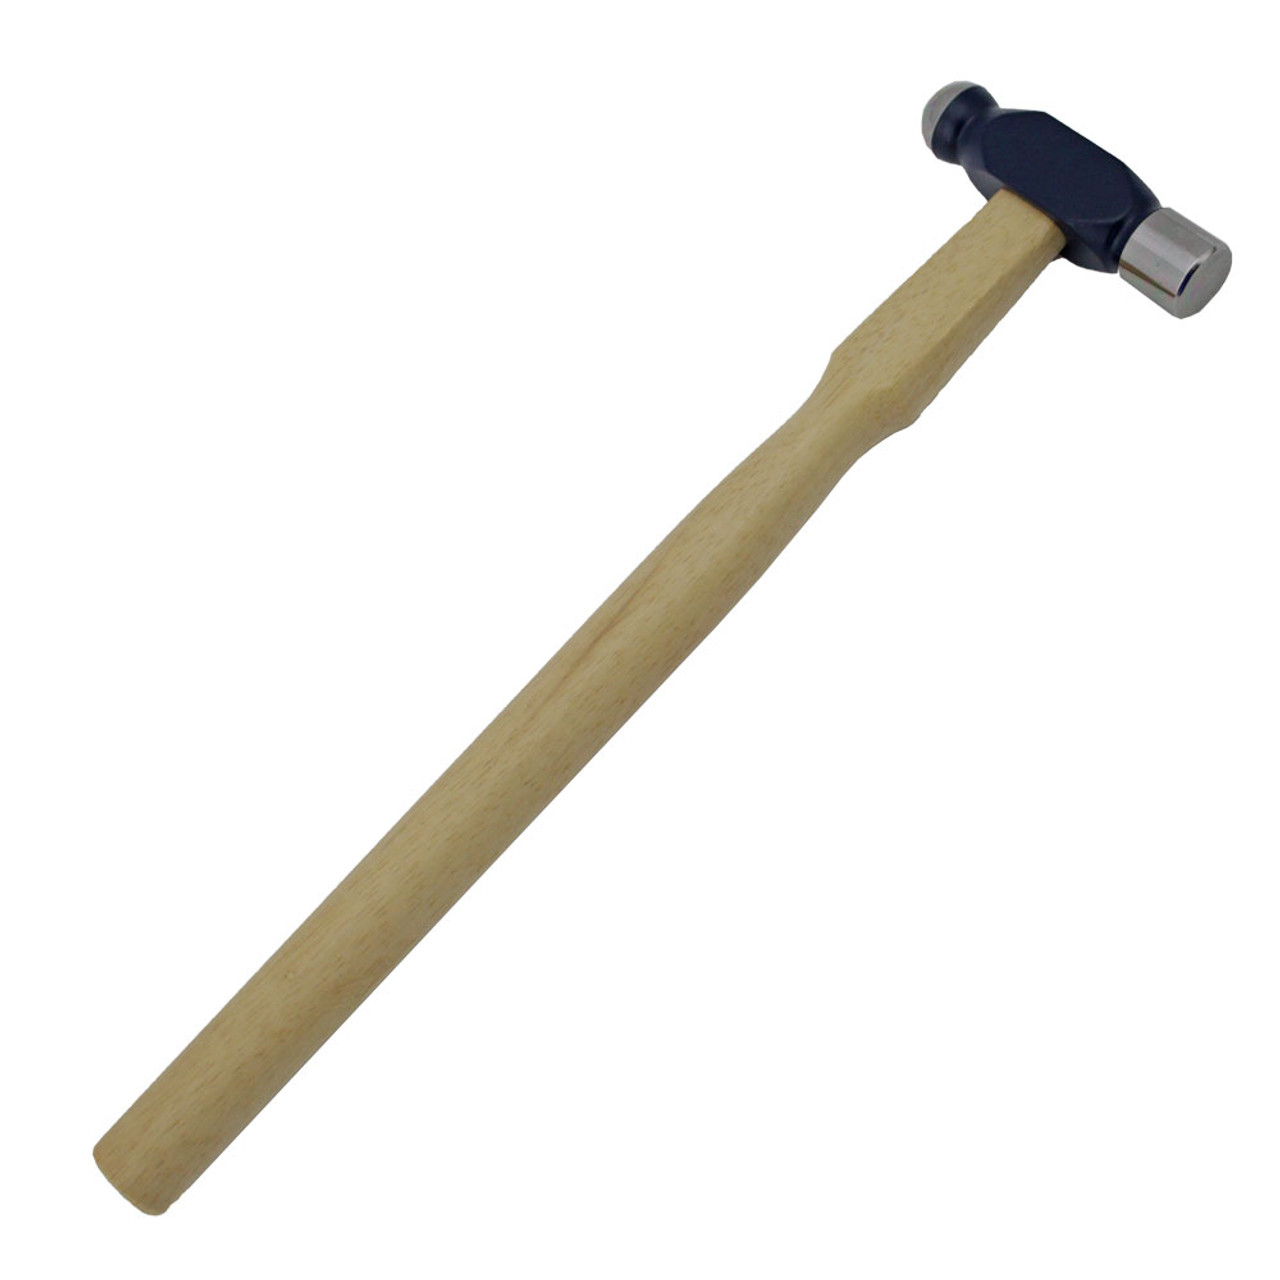 Ball Pein Hammer Supreme - 4oz